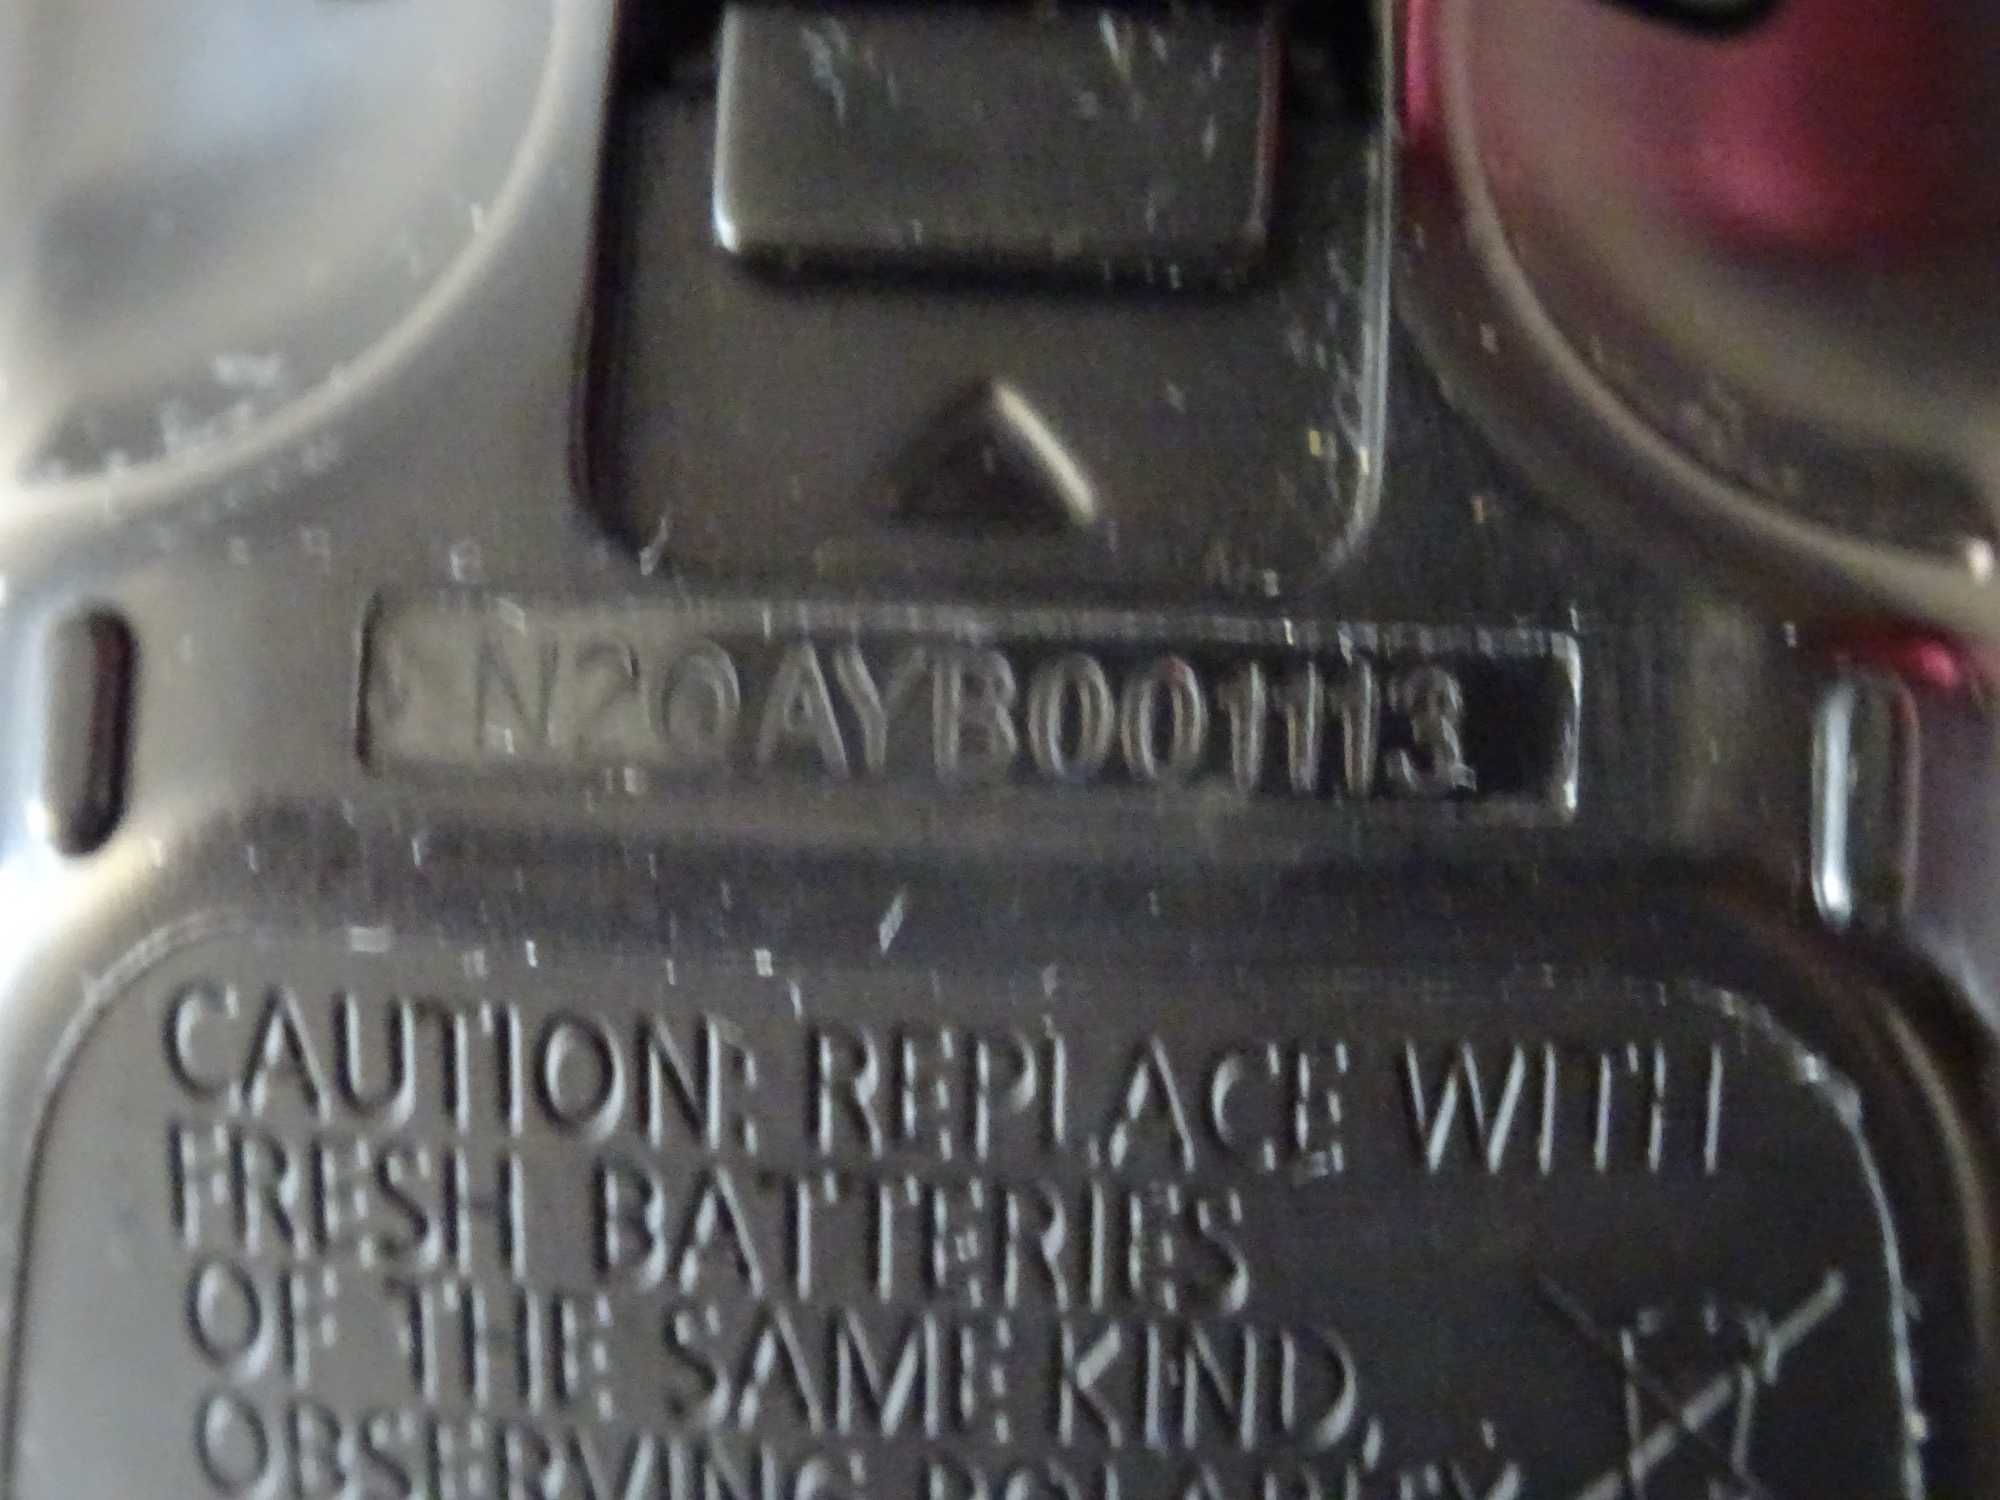 telecomanda blu ray recorder Panasonic DMR BCT , DMR BST N2QAYB001113